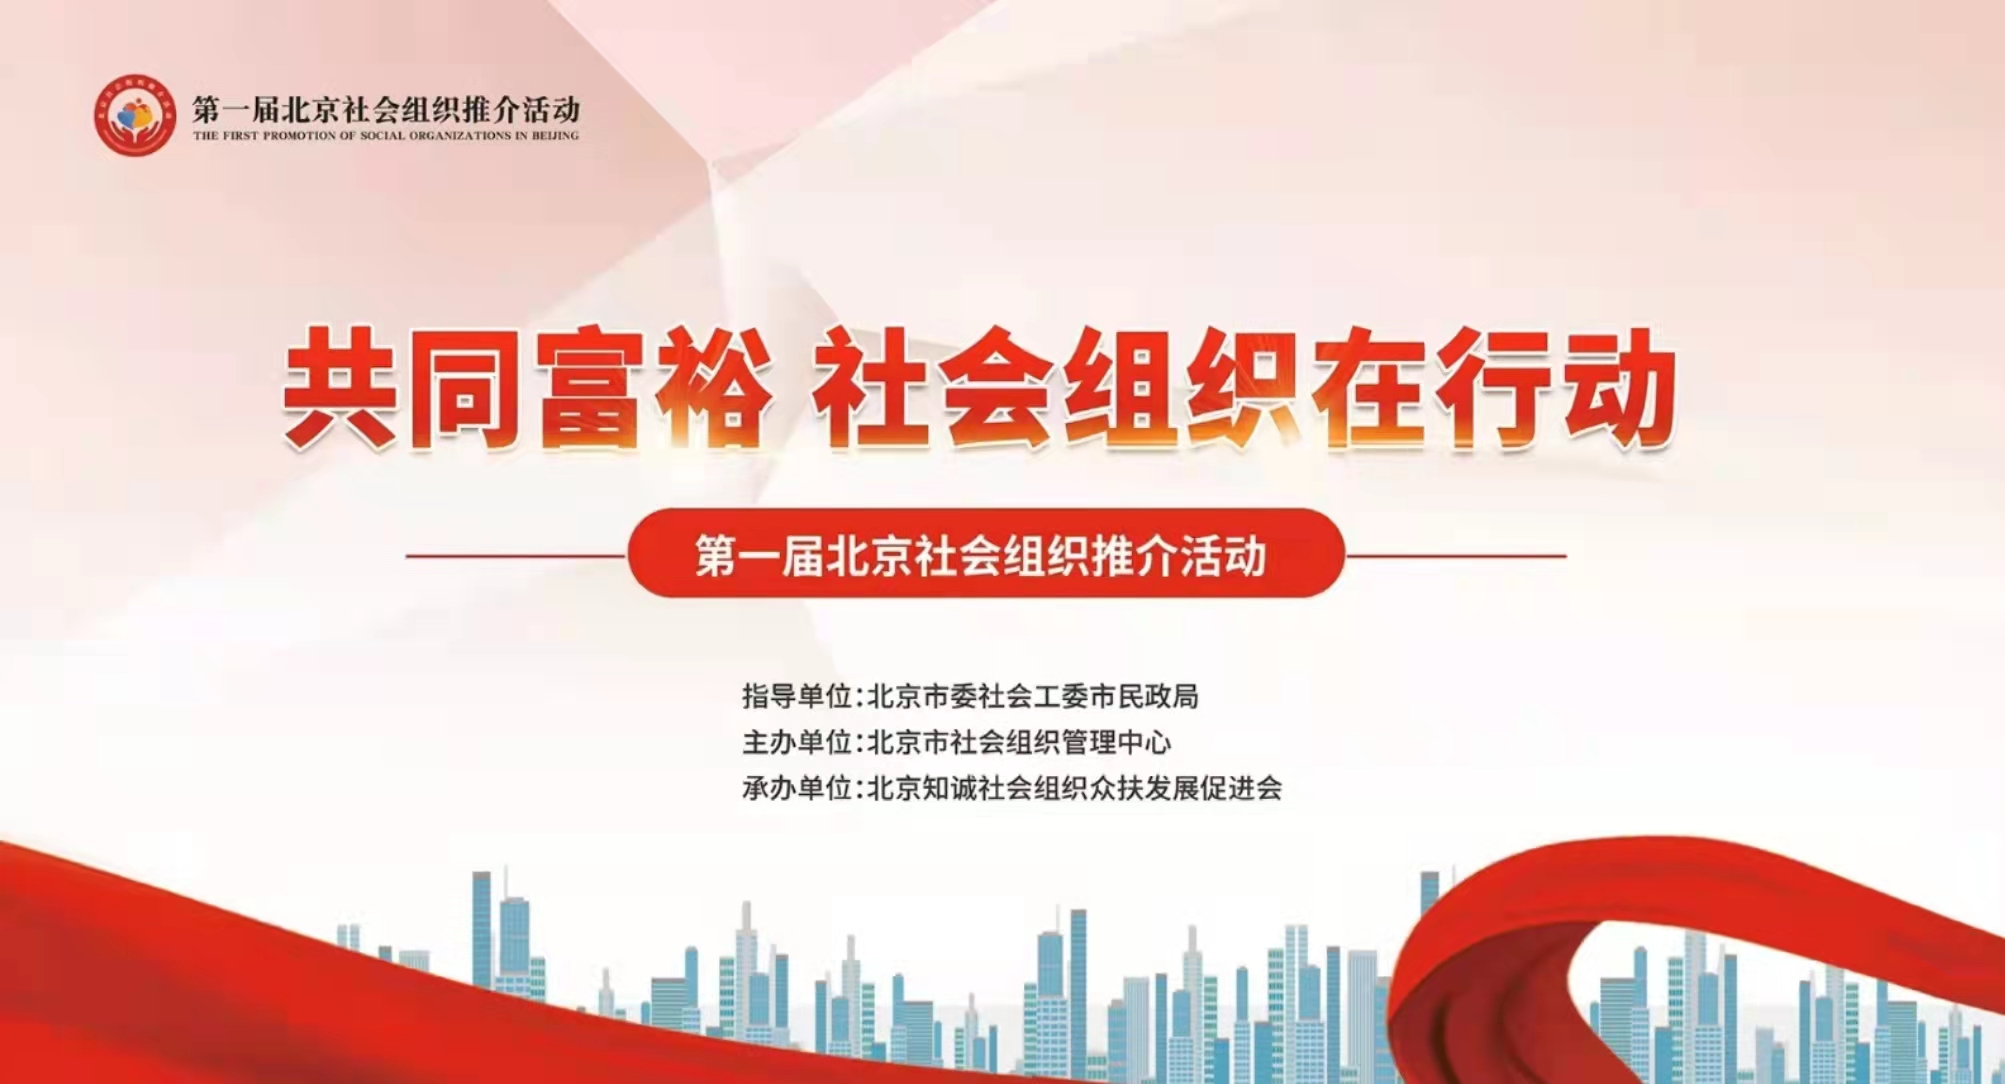 北京市快遞協會參加第一屆北京社會組織推介活動